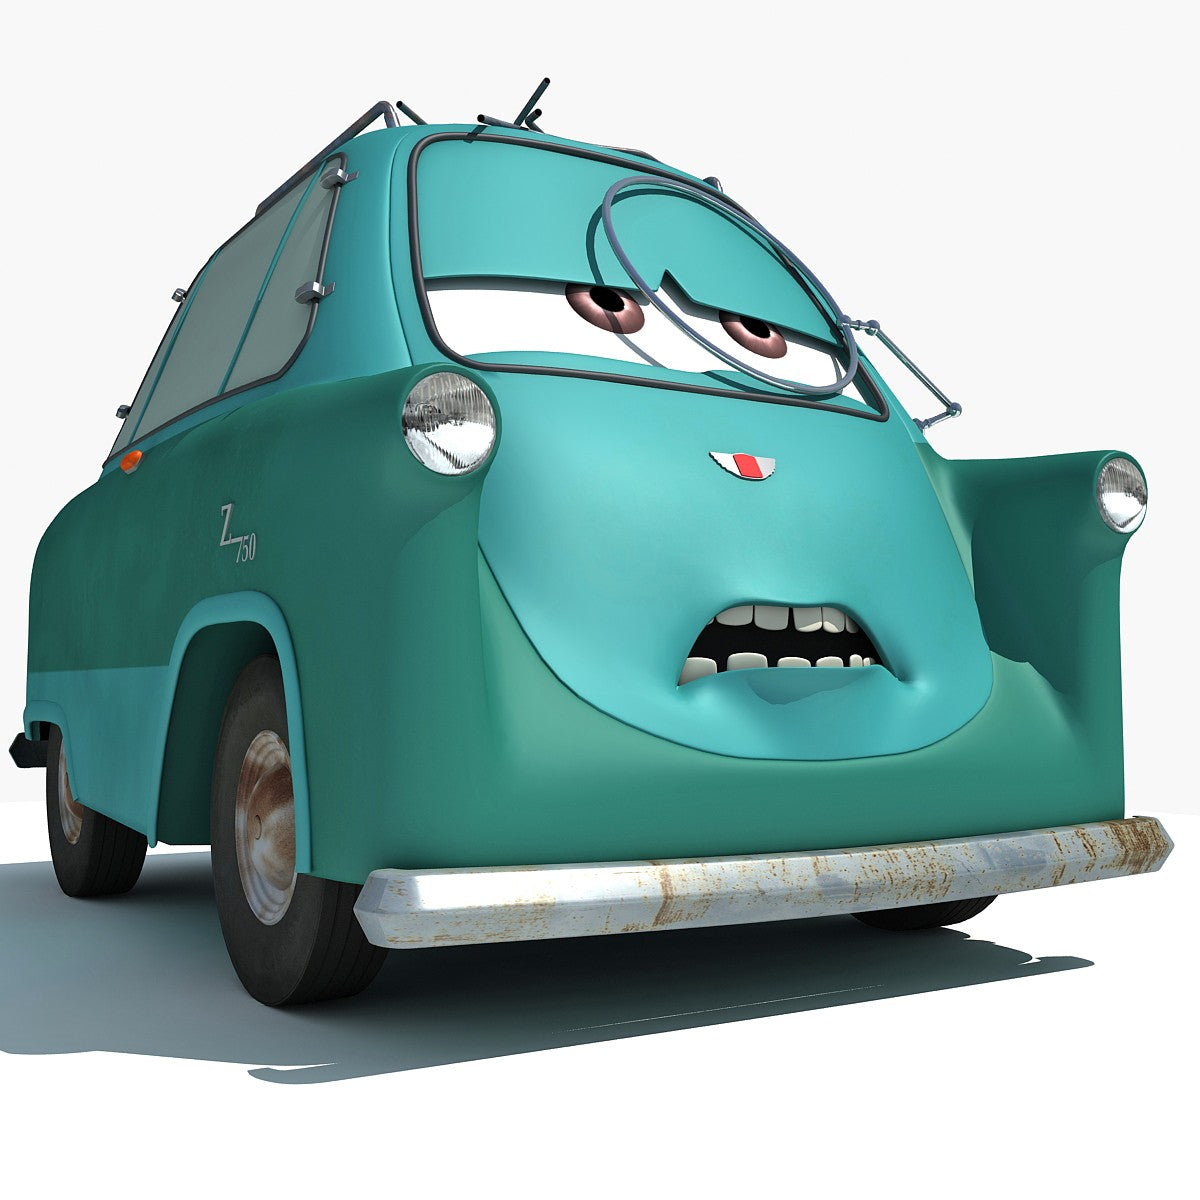 https://www.3dhorse.com/cdn/shop/products/disney-pixar-cars2-characters-3d-models-_30.jpg?v=1504008056